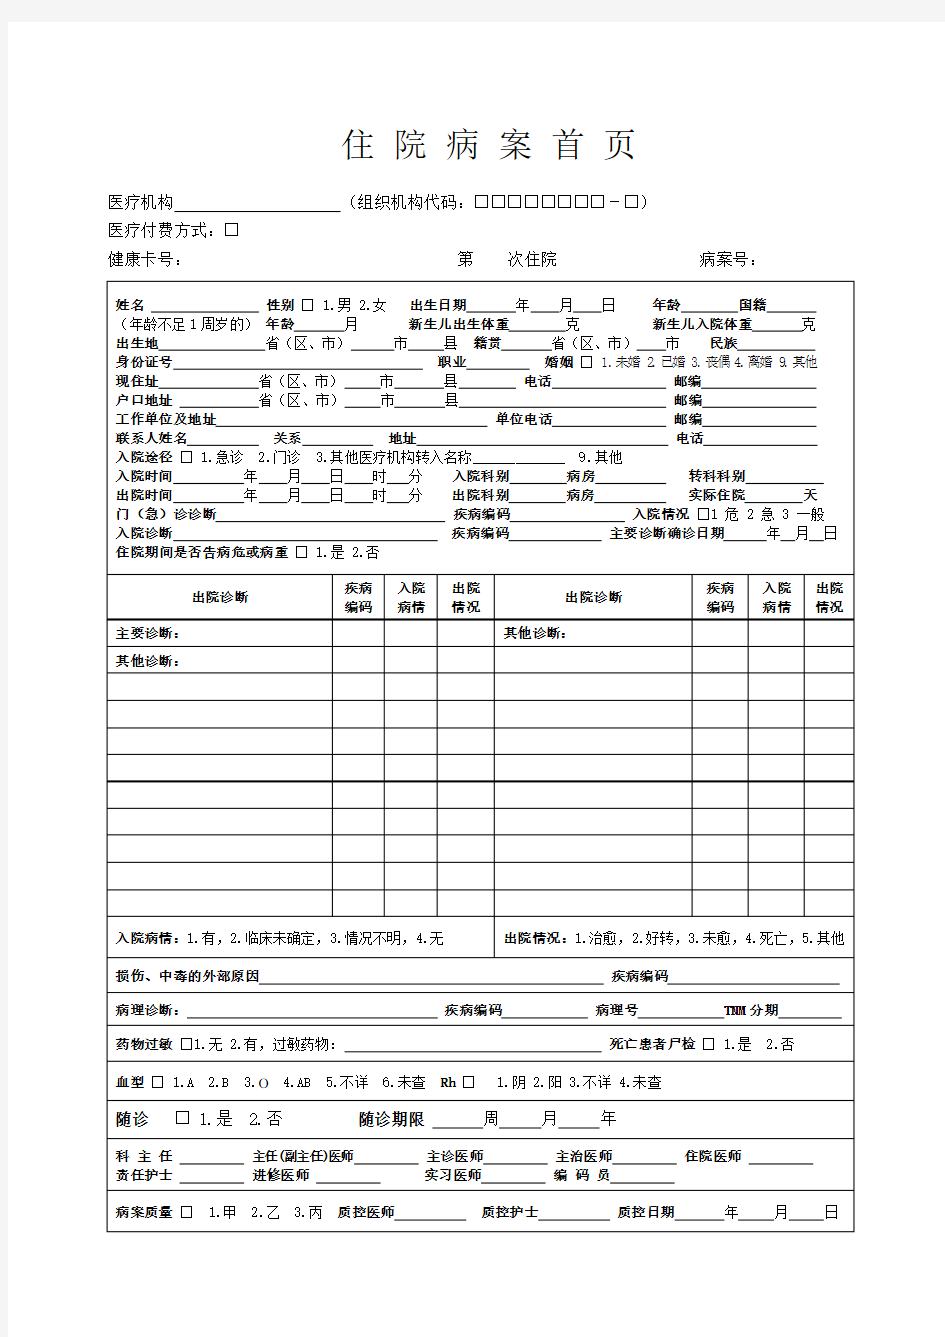 四川省病案首页标准样本及项目填写说明(2014)